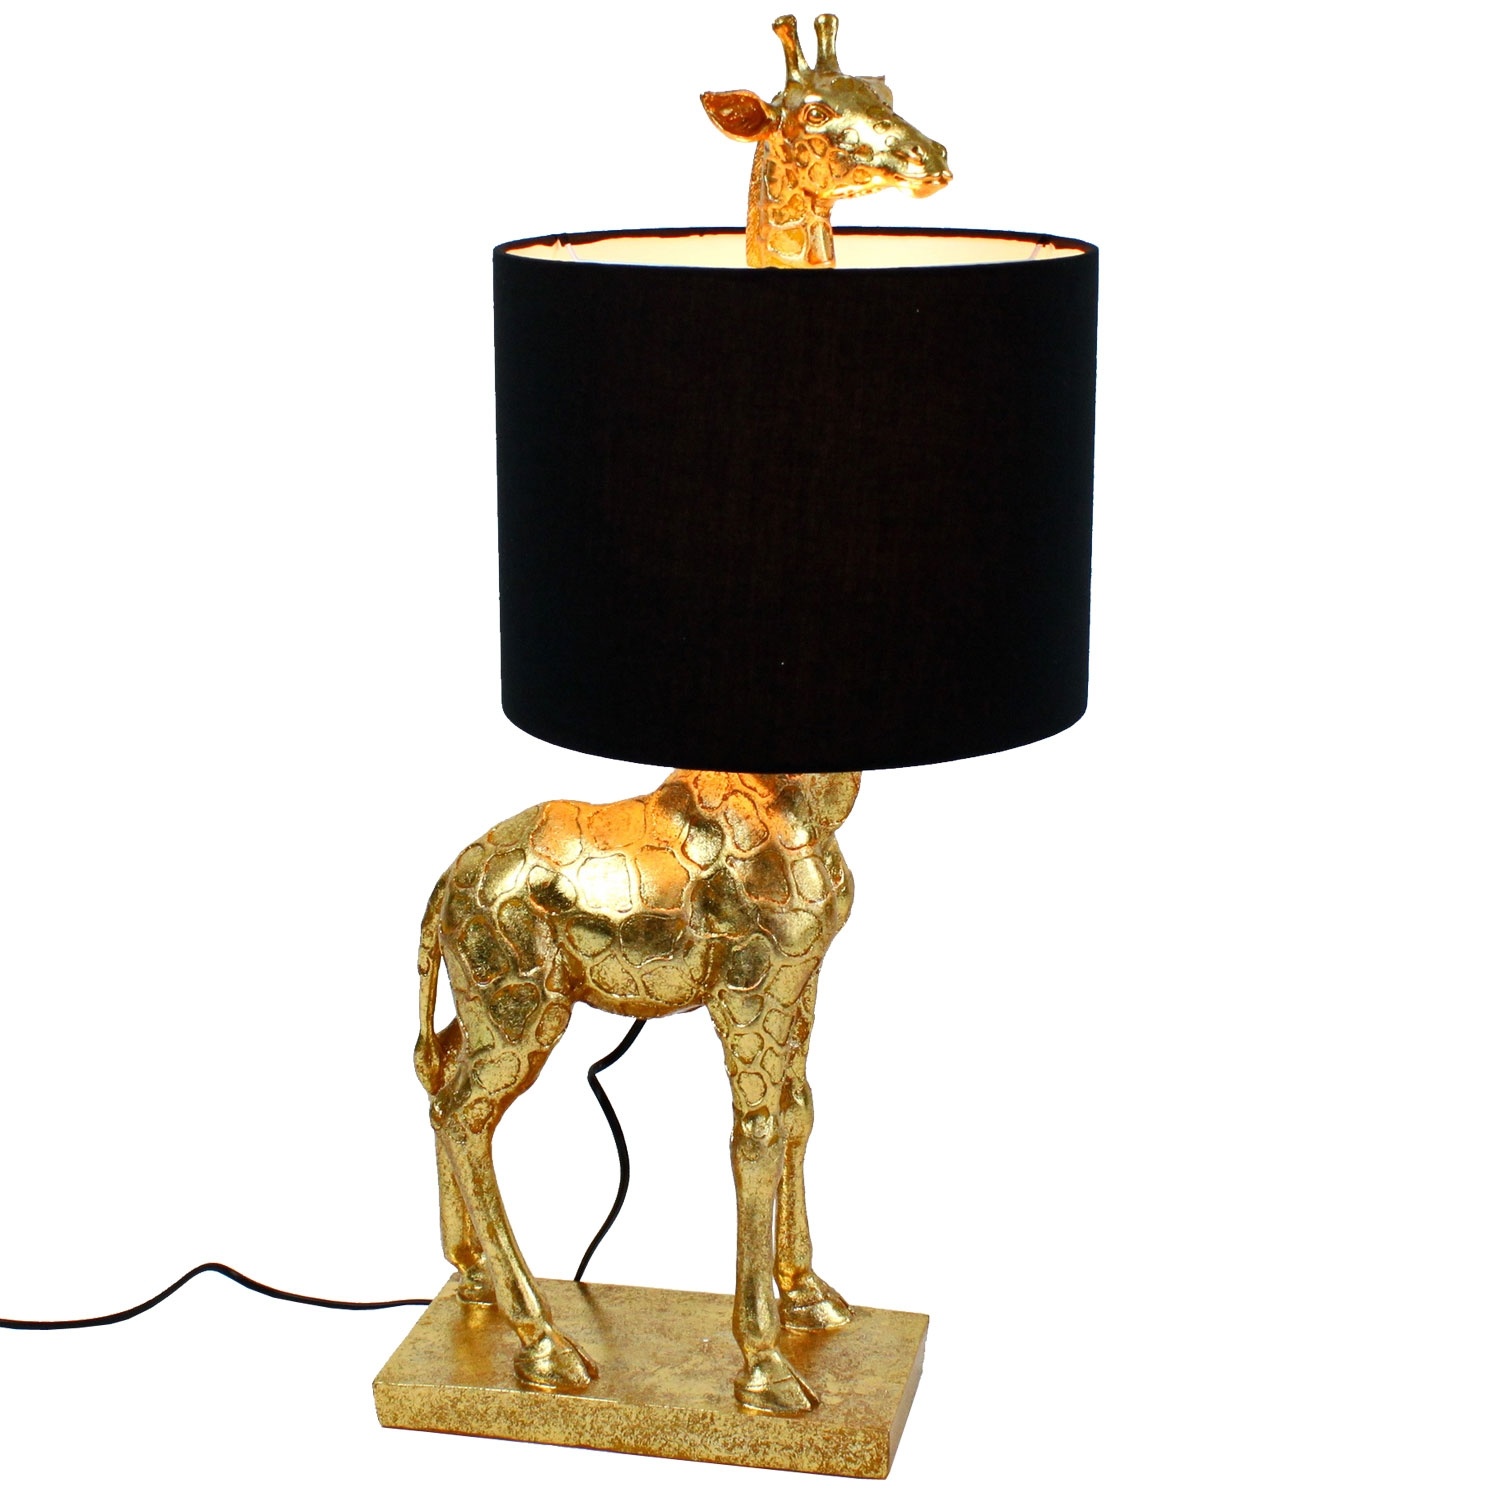 WZLJW Bois Lampe de Table Moderne Minimaliste créative Girafe en Forme de Dessin animé Lampe LED Enfants de lapprentissage de la Lampe-Blue ggsm Color : Blue 